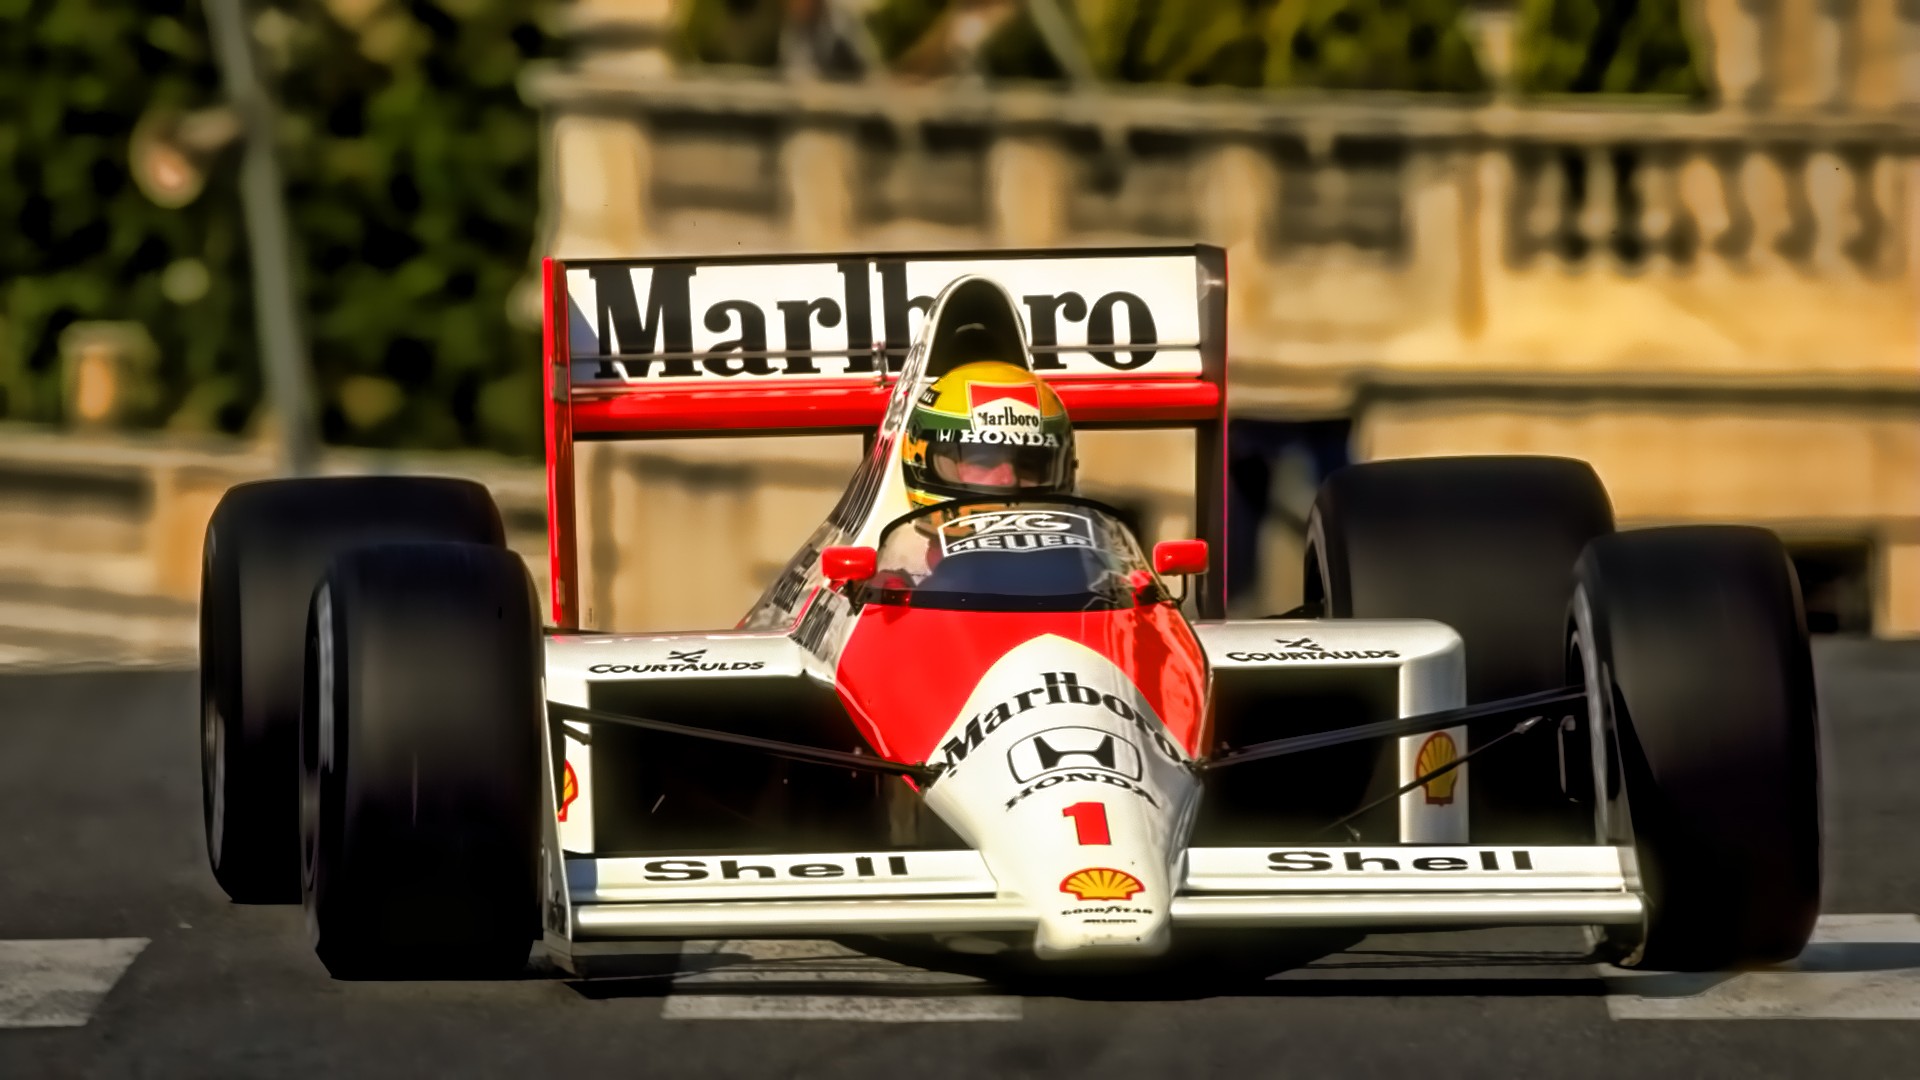 Ayrton Senna, Formula 1, McLaren F1, Monaco, Marlboro, Racing